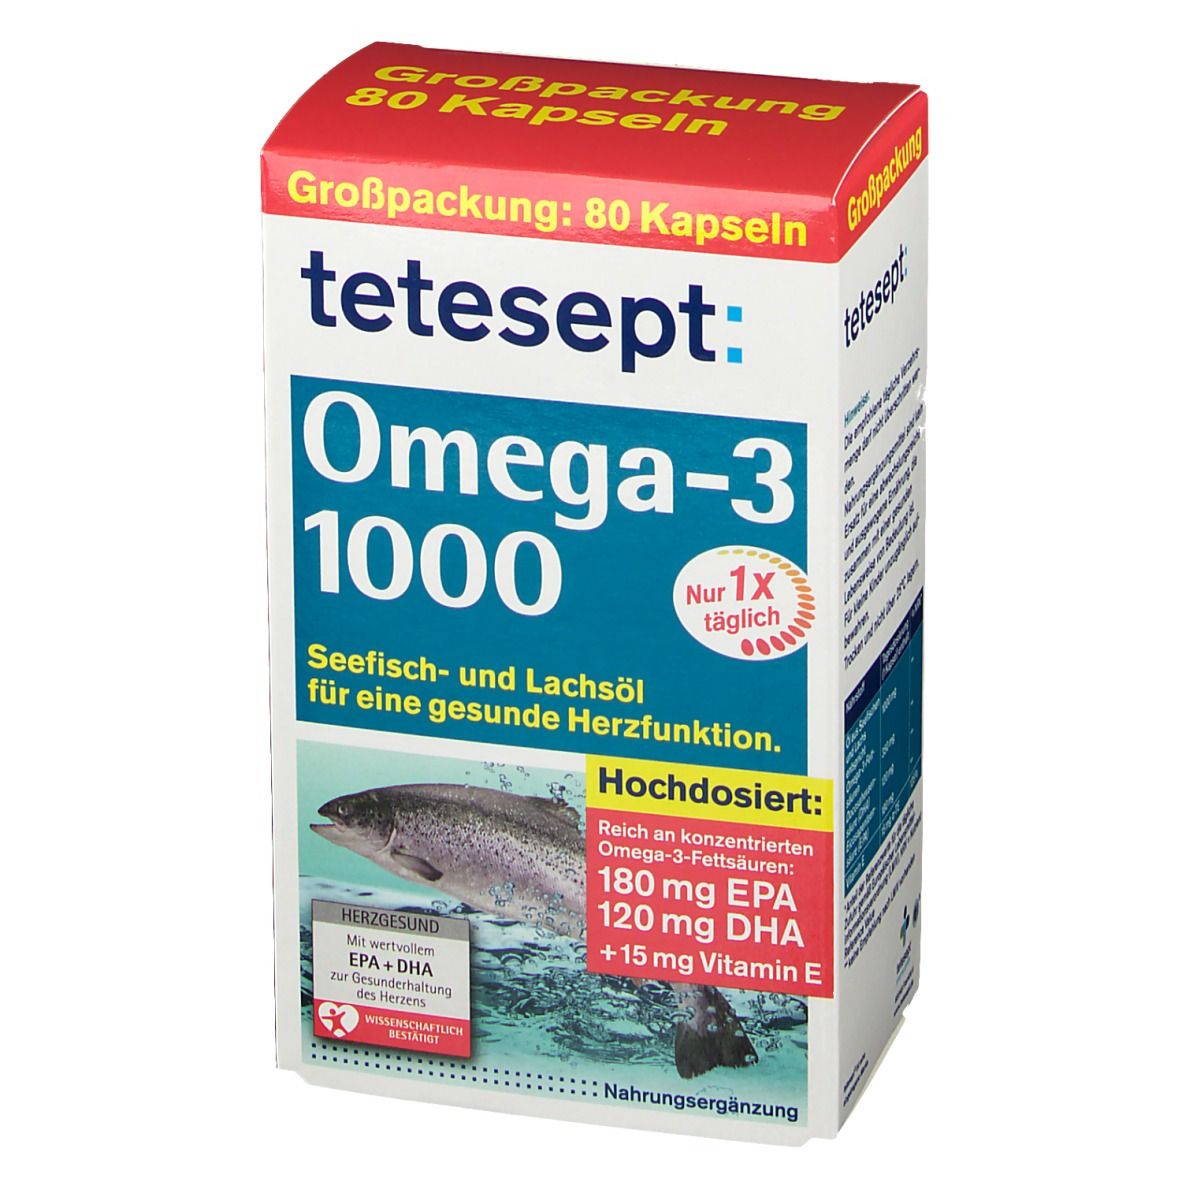 tetesept® Omega-3 1000